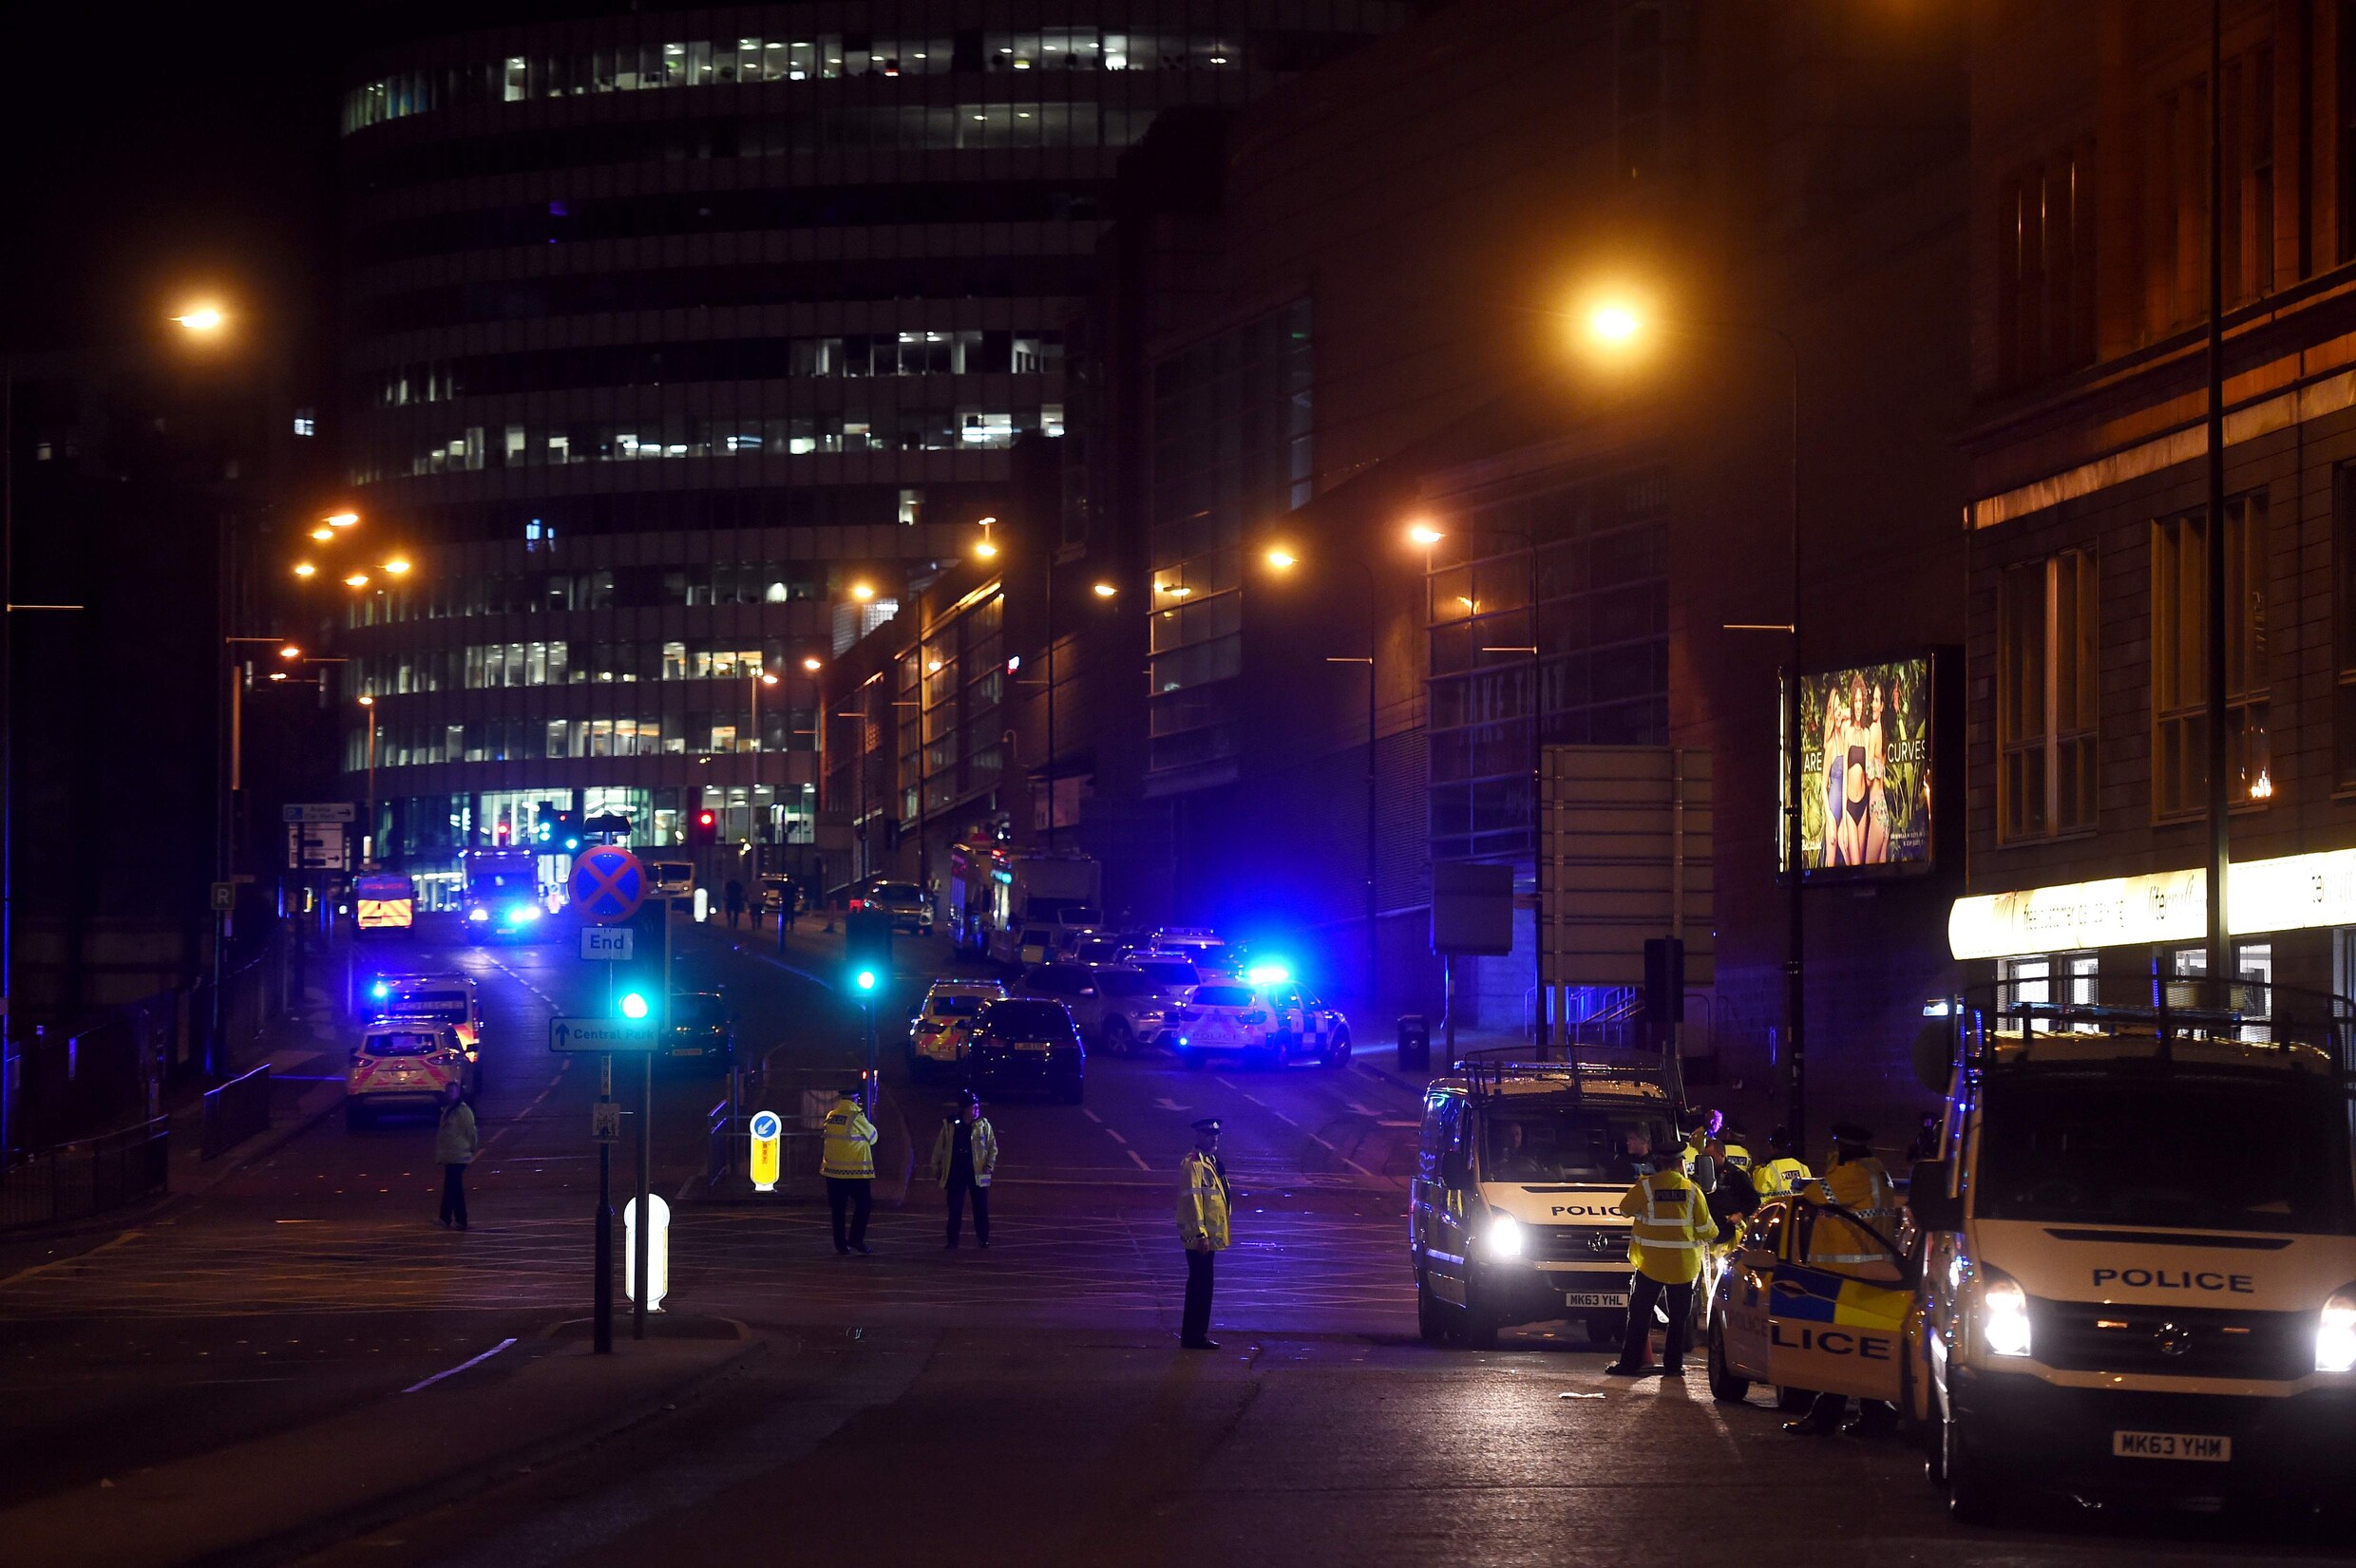 Ooggetuigen uit Manchester Arena: "Mensen werden vertrappeld op de grond"